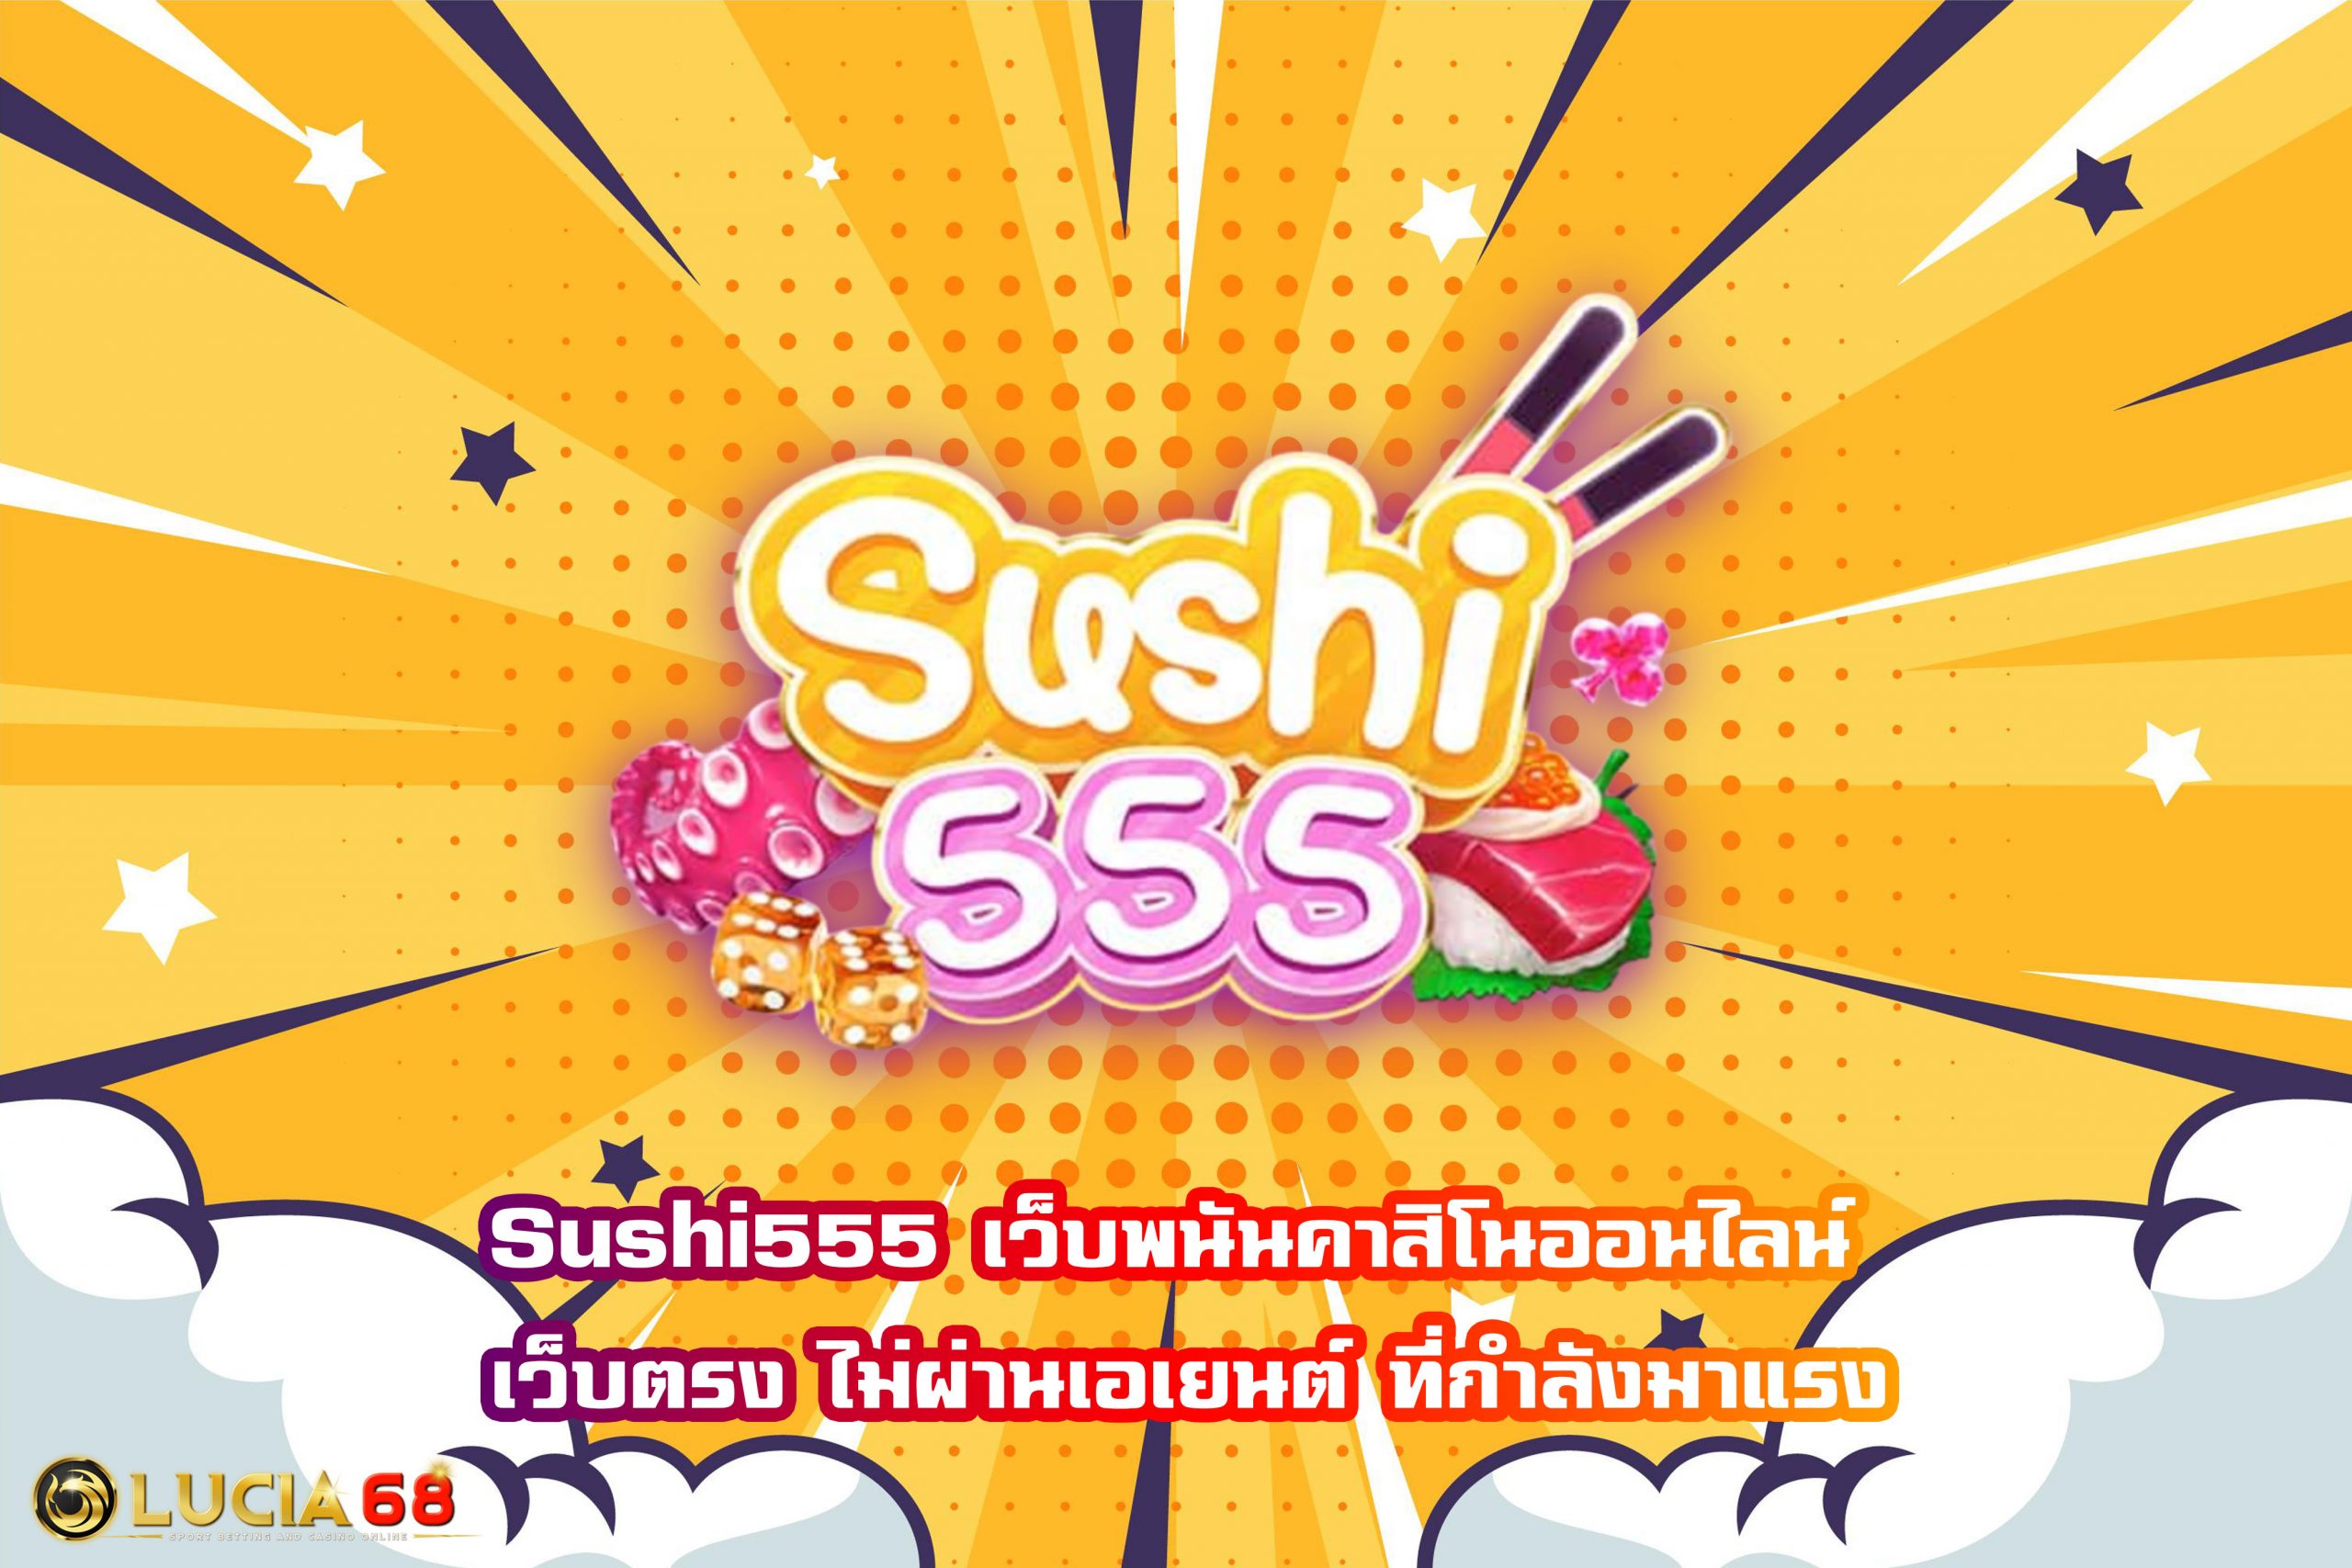 Sushi555 เว็บพนันคาสิโนออนไลน์ เว็บตรง ไม่ผ่านเอเยนต์ ที่กำลังมาแรง